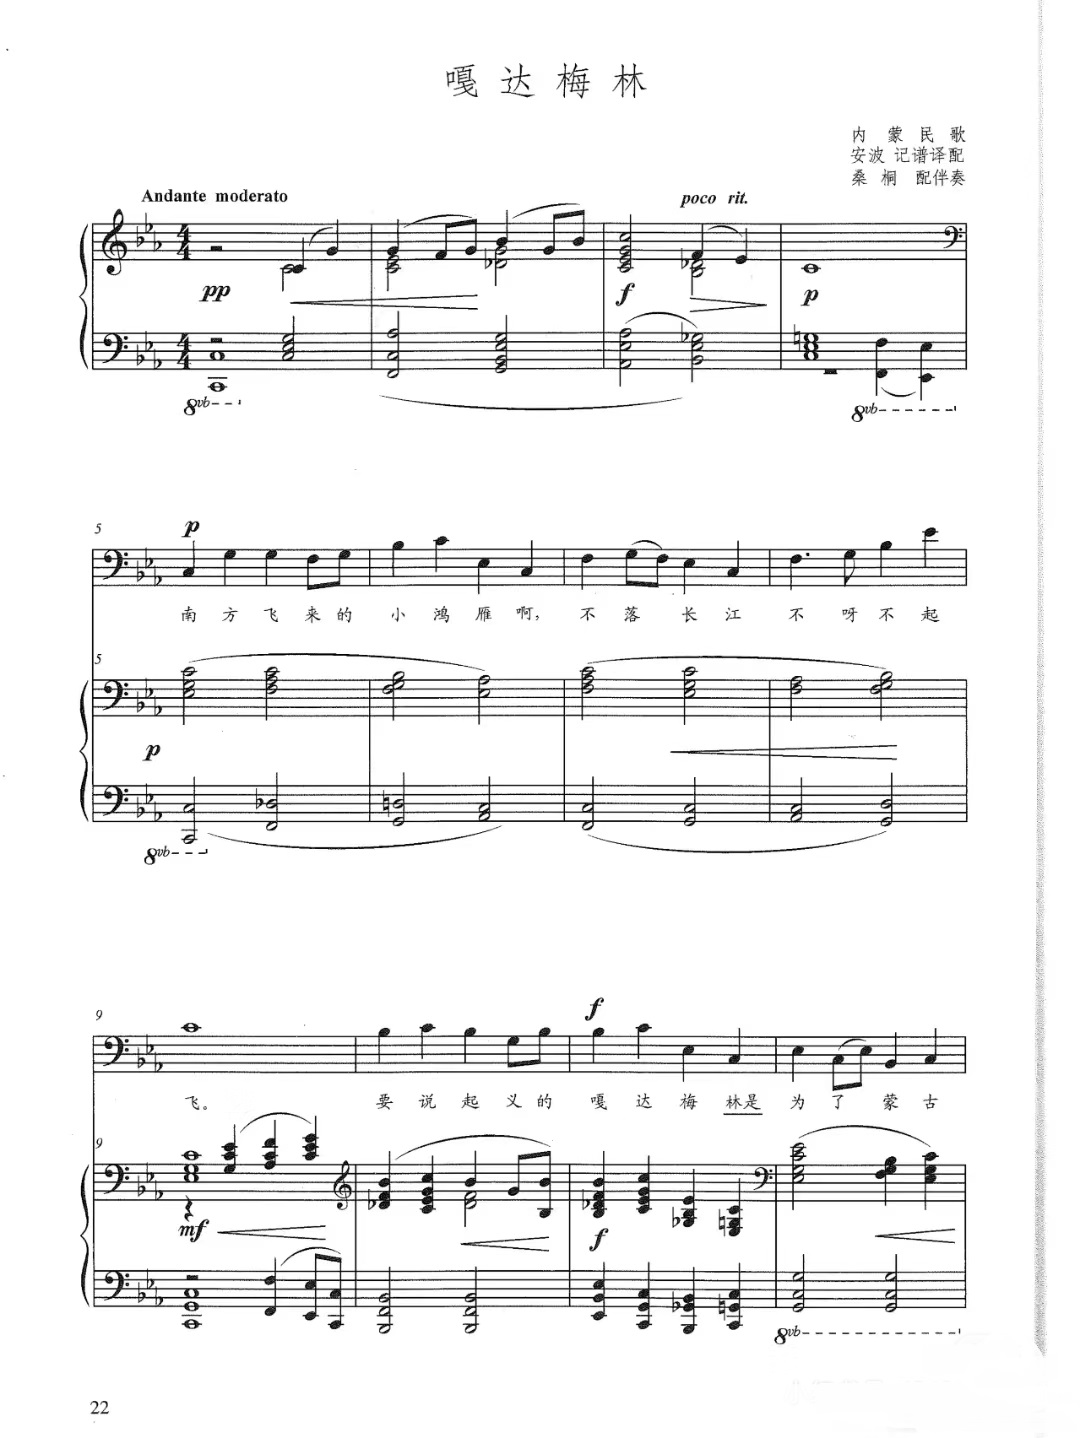 《嘎达梅林》的钢琴谱钢琴曲谱 - 蒙古民歌